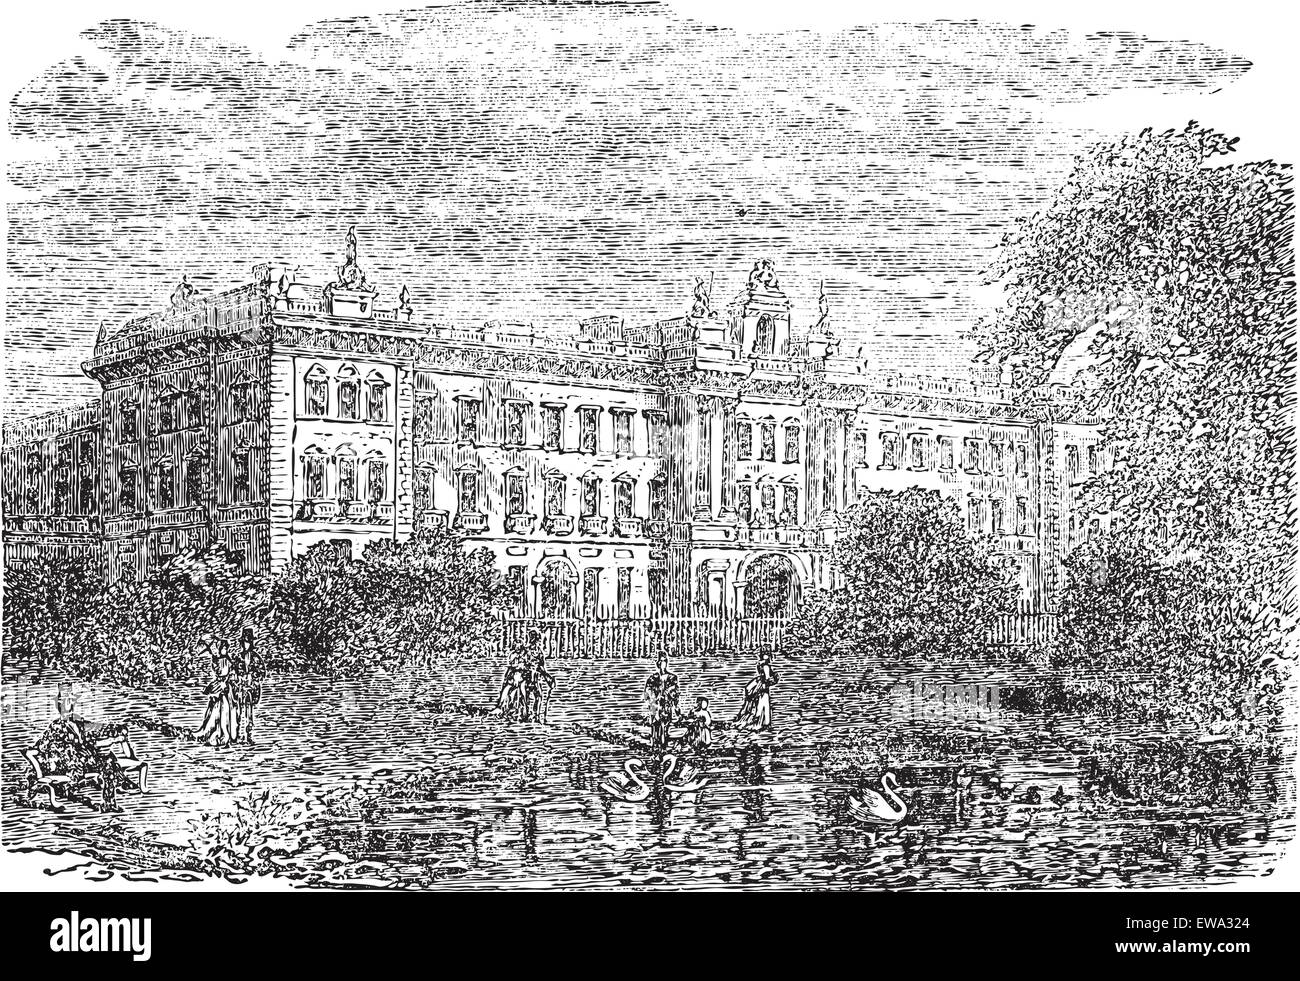 Le palais de Buckingham ou Buckingham House à Londres, en Angleterre, pendant les années 1890, gravure d'époque. Vieille illustration gravée de Buckingham Palace avec le lac et les gens en face. Illustration de Vecteur